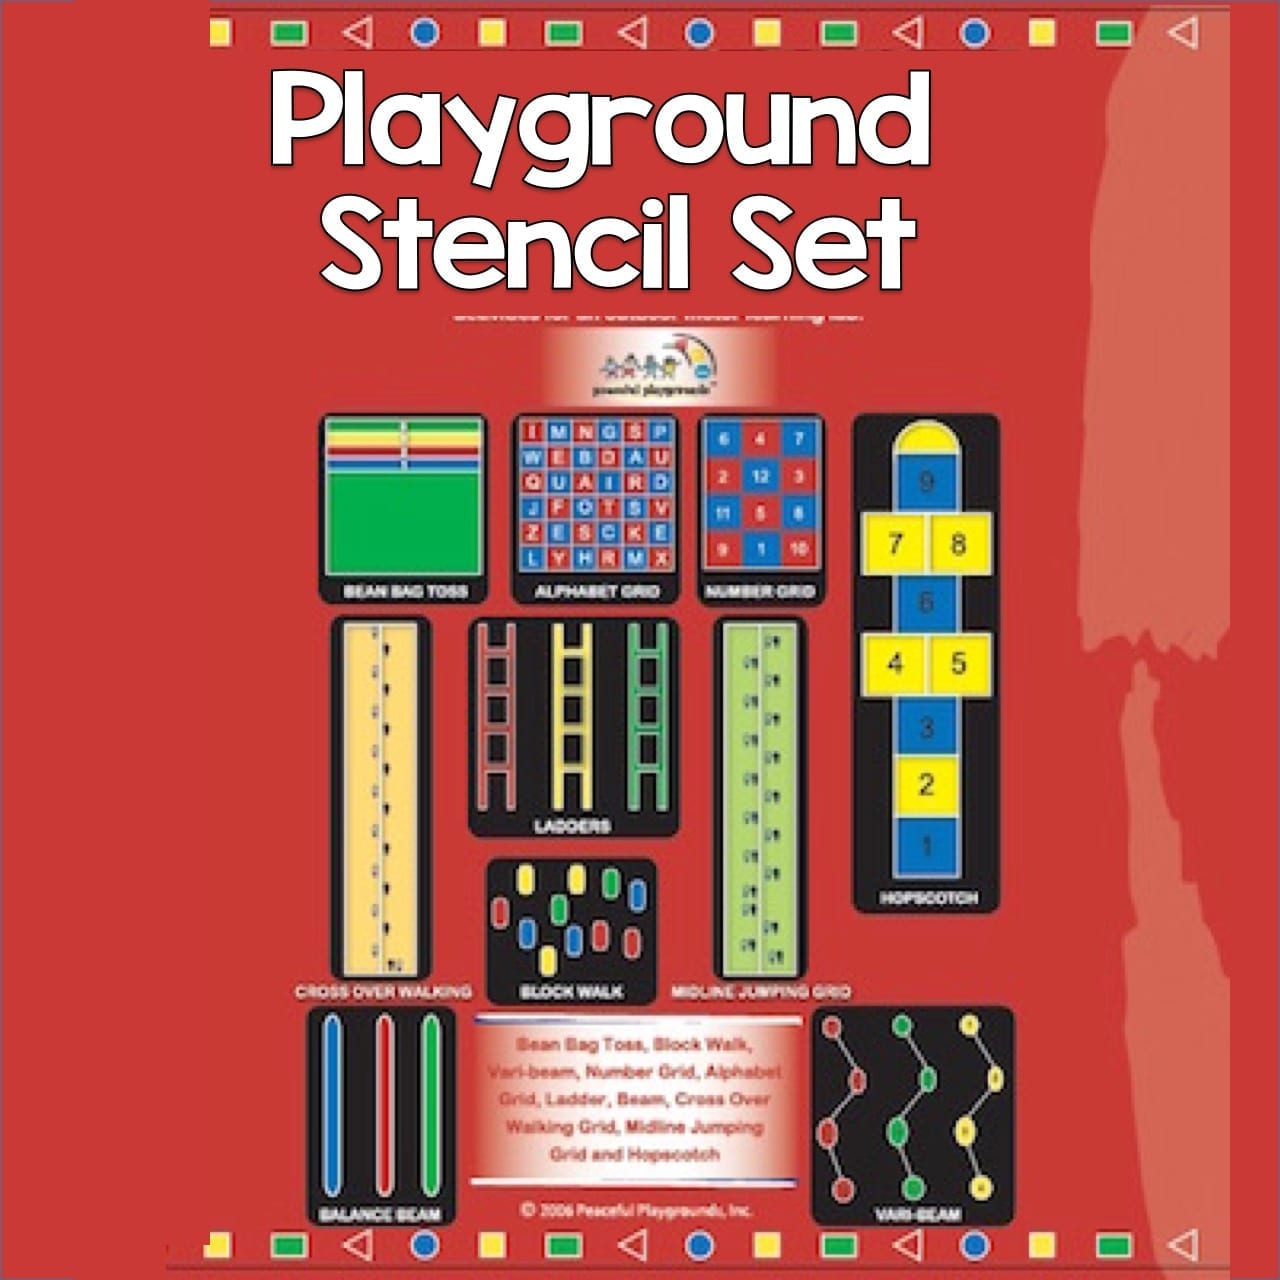 Playground Stencil Set